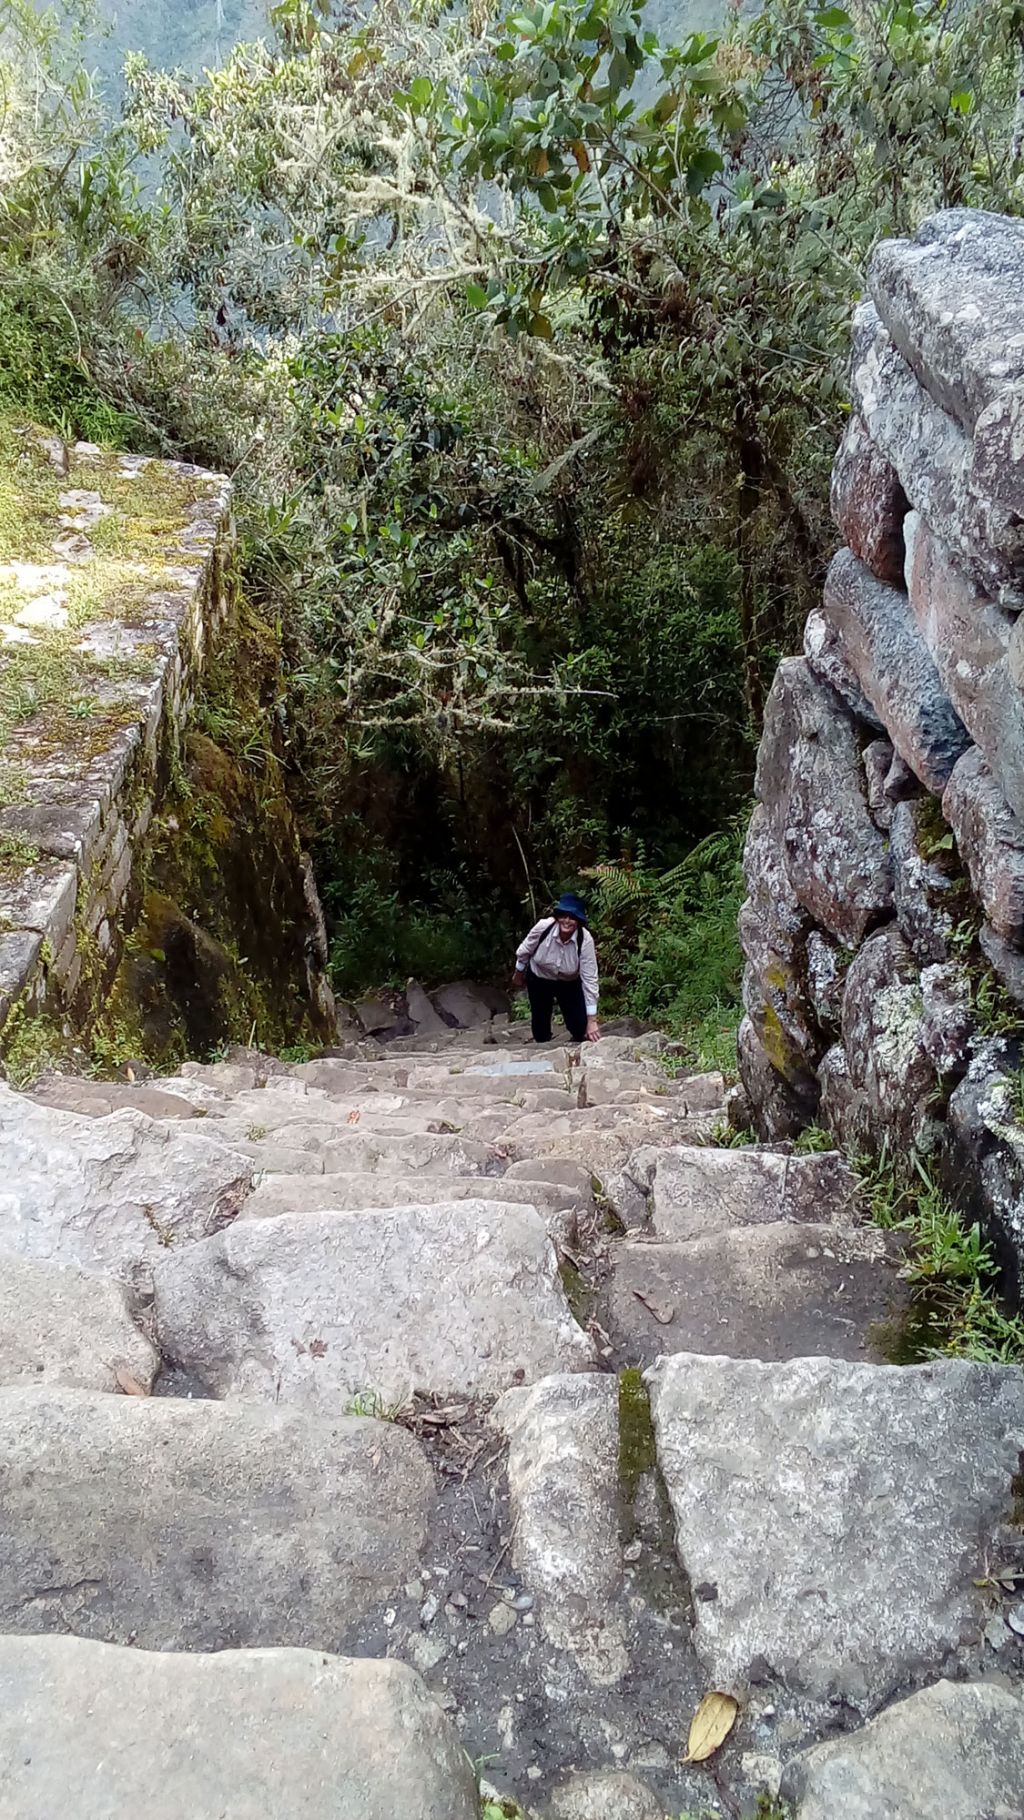 Salkantay and Inca Trail in 6 days by Elizabeth Gordon - Salkantay and Inca Trail in 6 days by Elizabeth Gordon